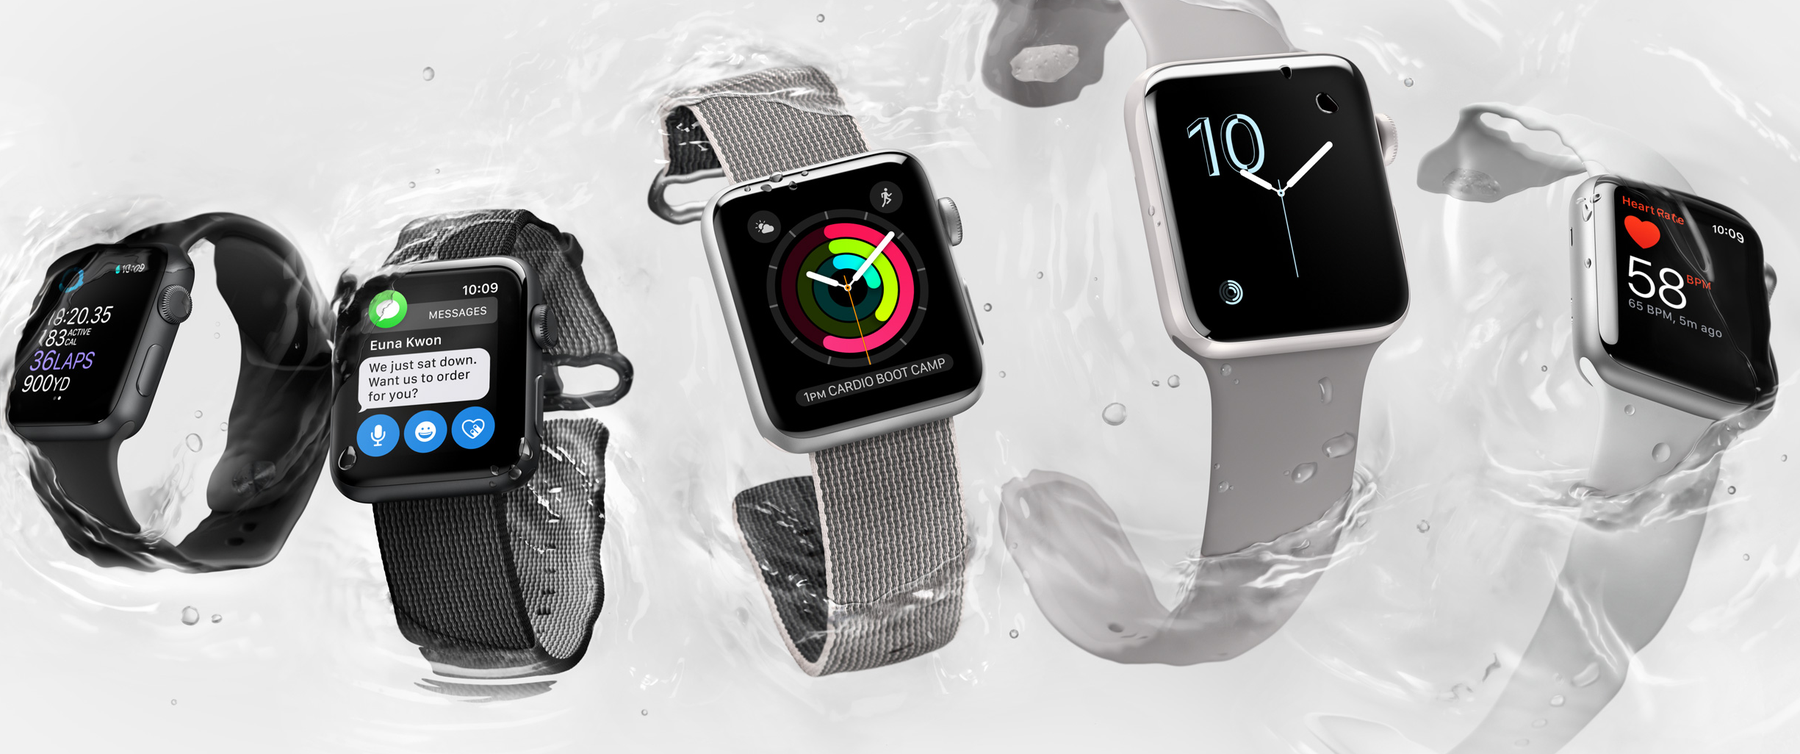 Die Apple Watch Series 2 ist wie die neuen iPhones wasserdicht und hat nun ein eingebautes GPS.